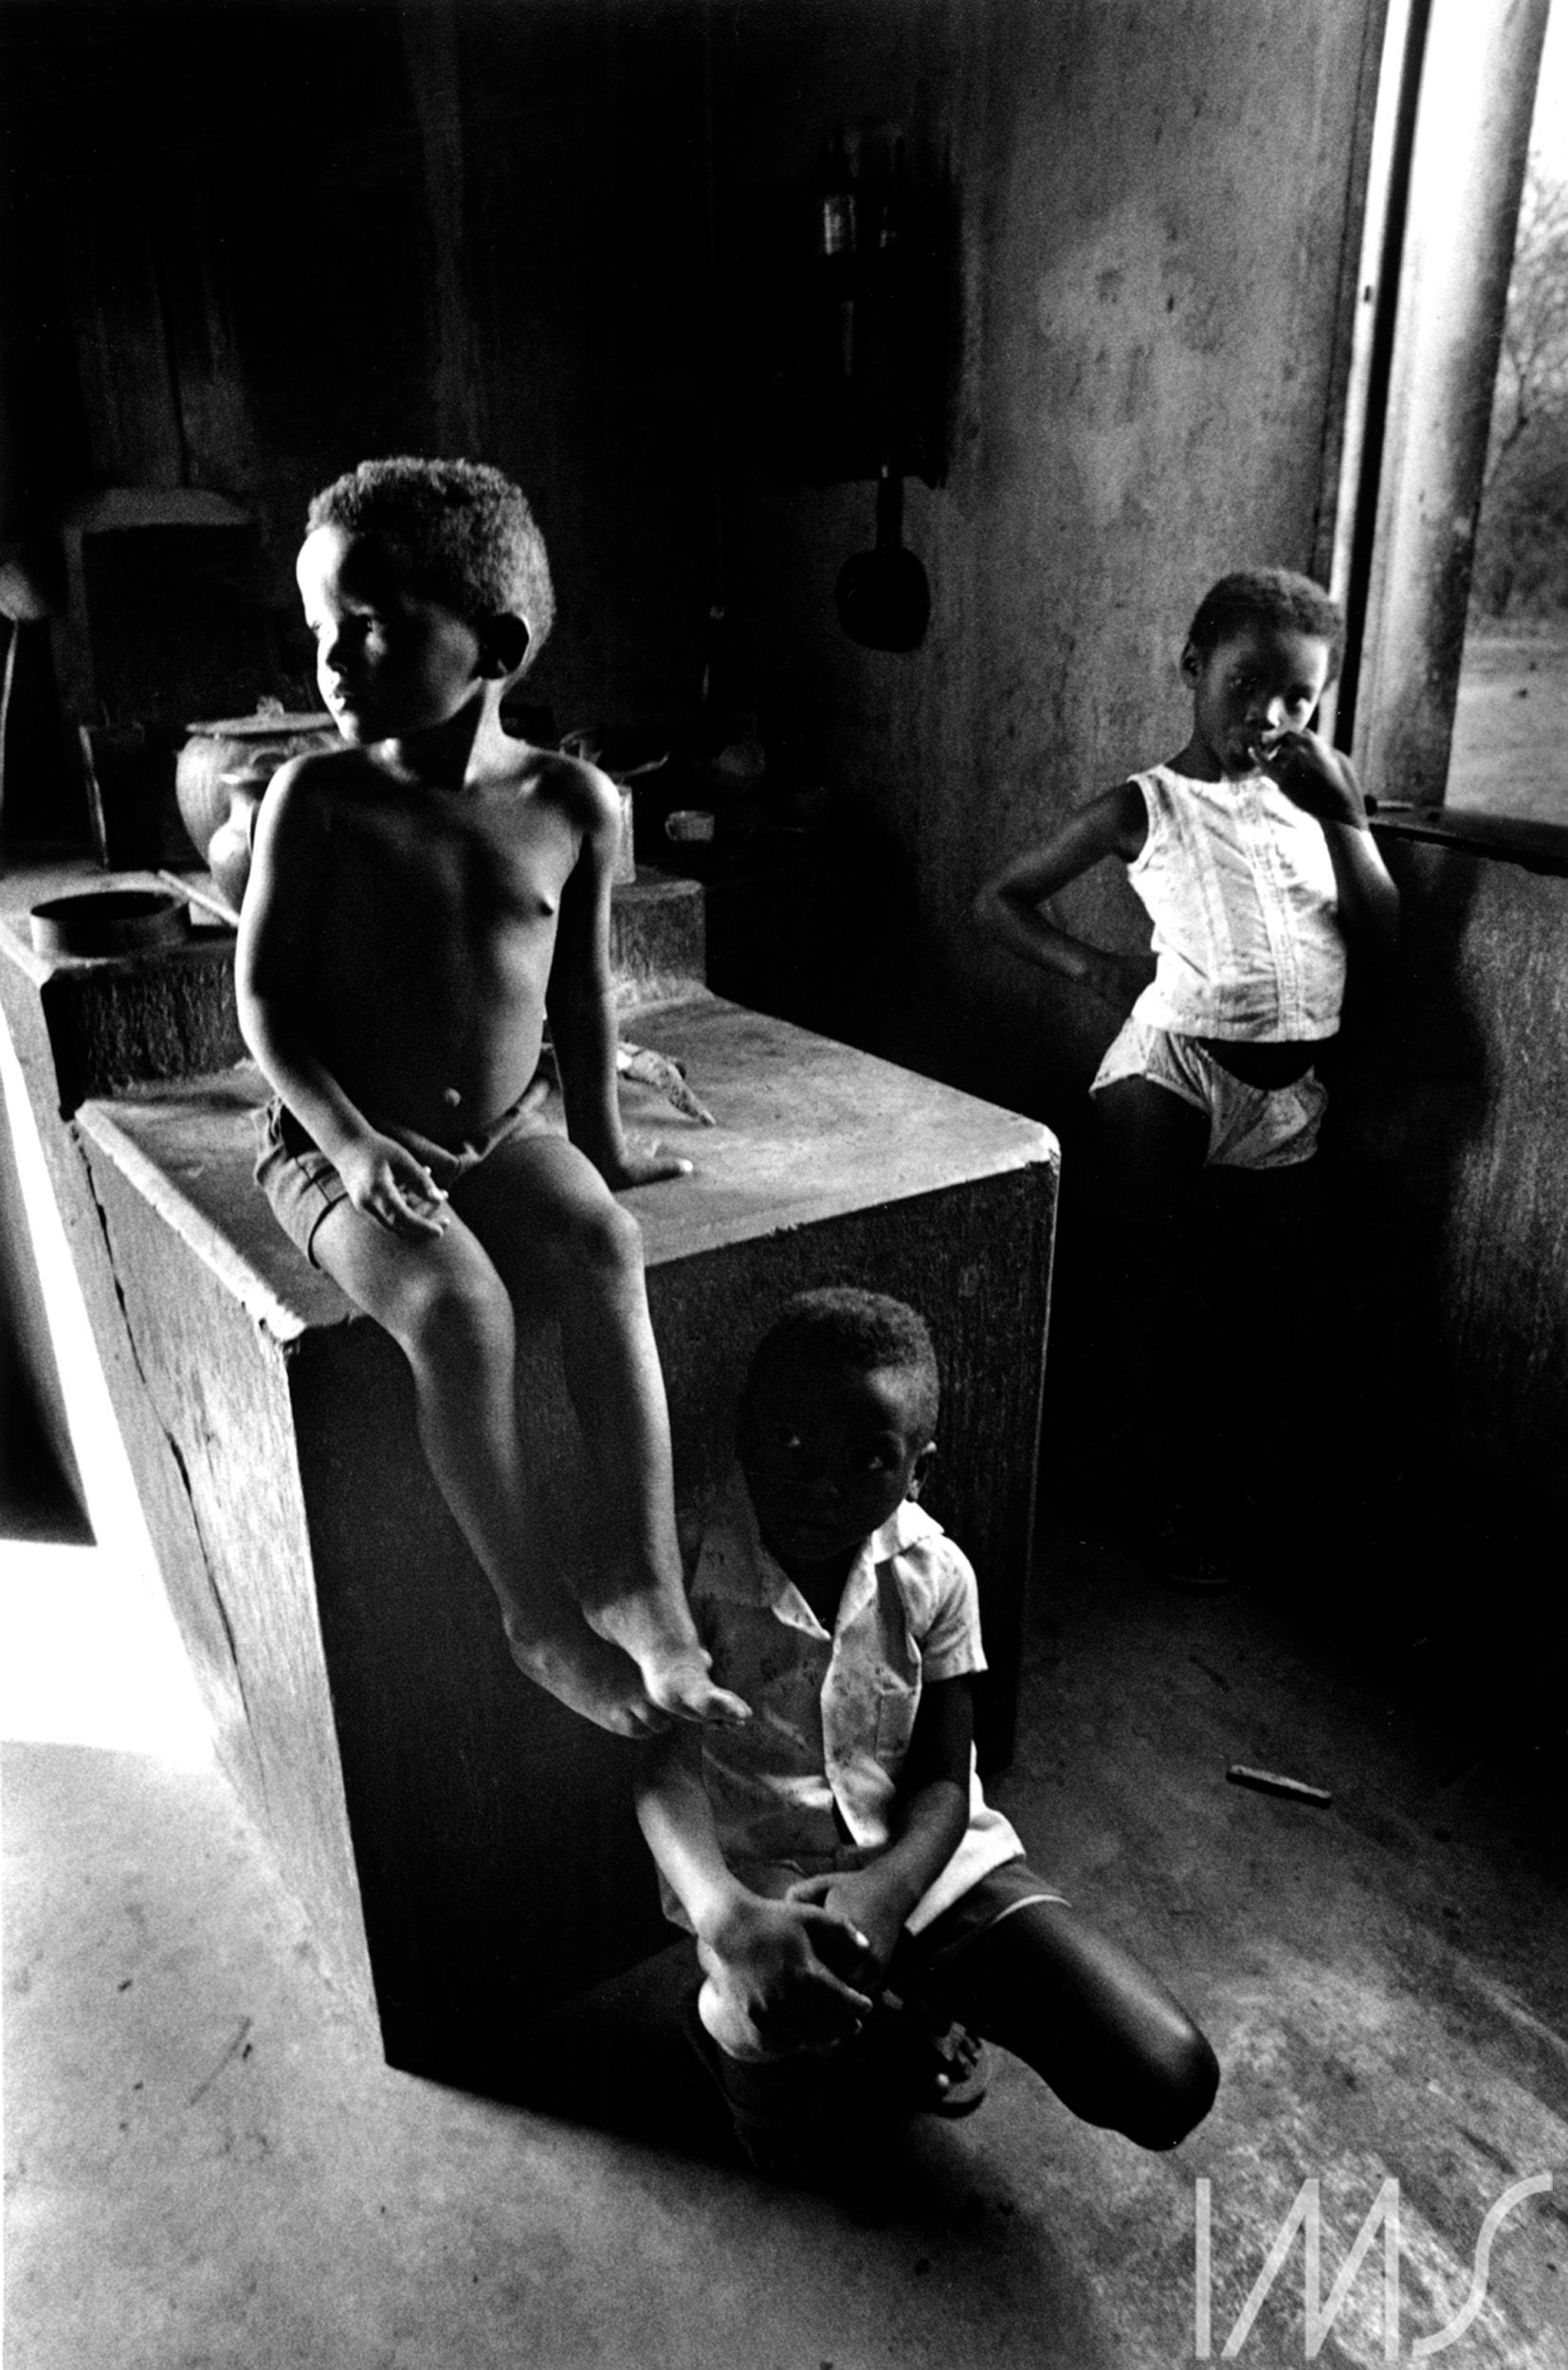 Crianças. RN, Brasil, c. 1975. Foto de Madalena Schwartz/Acervo IMS